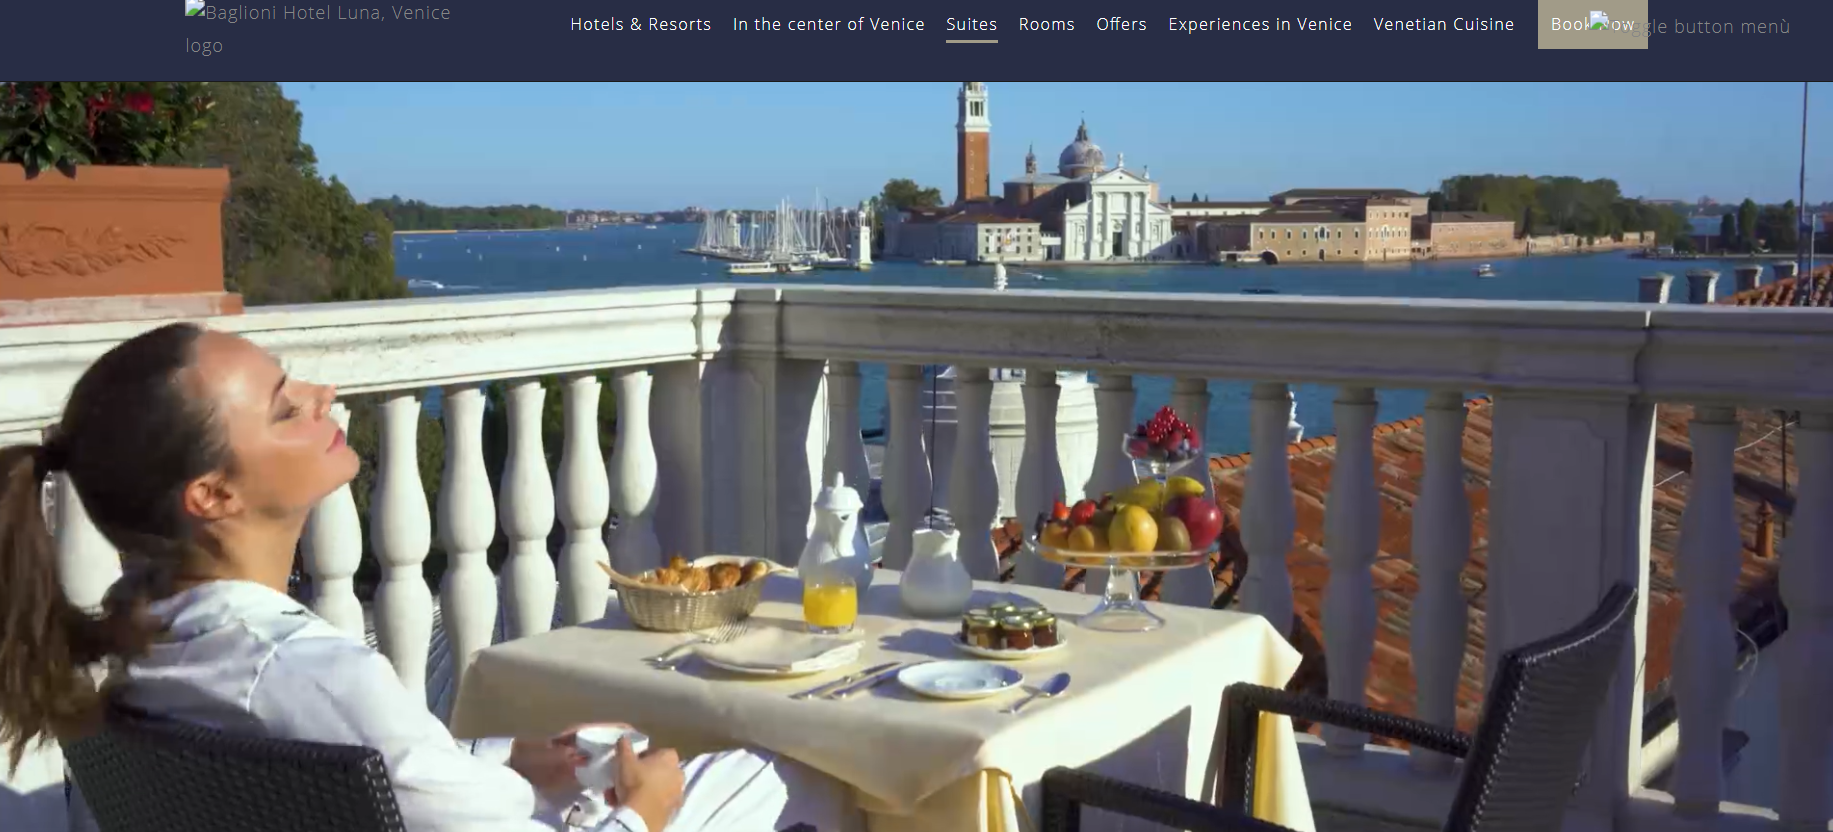 地产大亨 Reuben Brothers 1亿欧元收购威尼斯最古老的房地产之一：Baglioni Luna 酒店